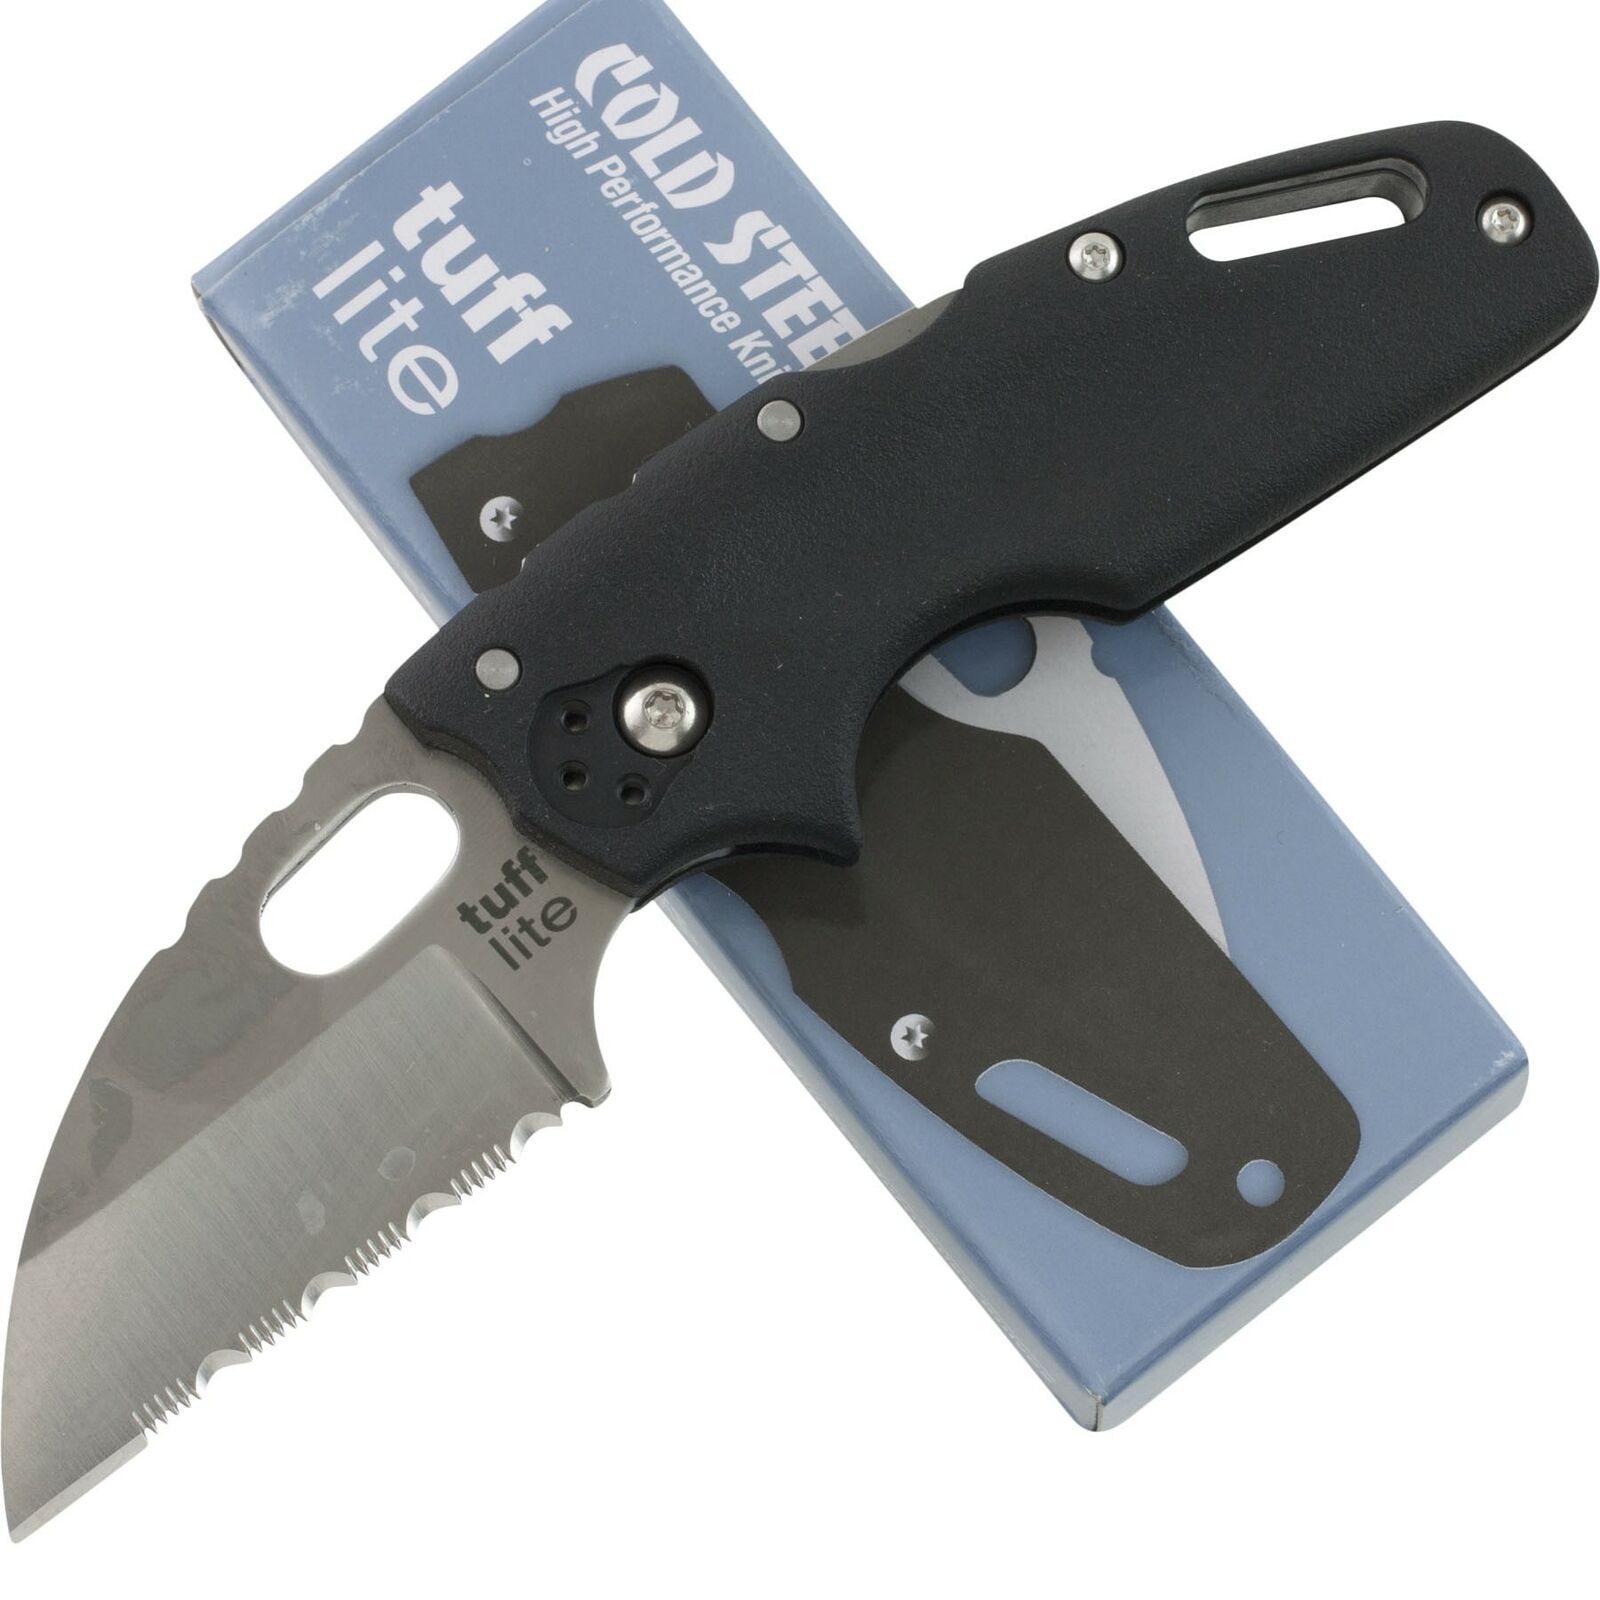 Cold Steel Tuff Lite Black Lockback Pocket Knife CS20LTS Serrated Folding Blade